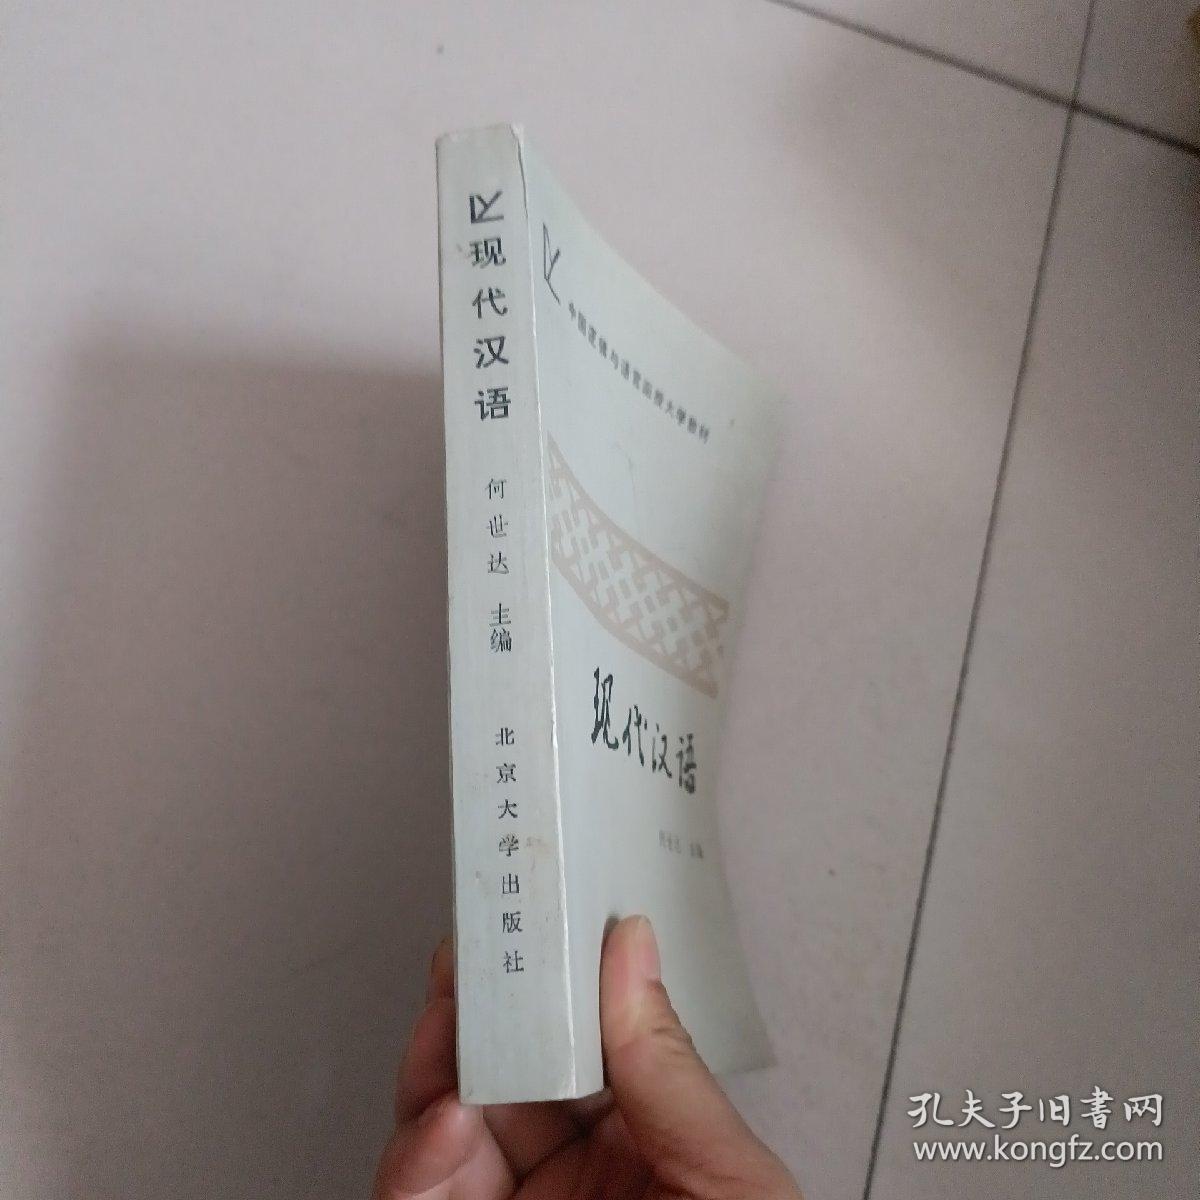 中国逻辑与语言函授大学教材 现代汉语【342号】